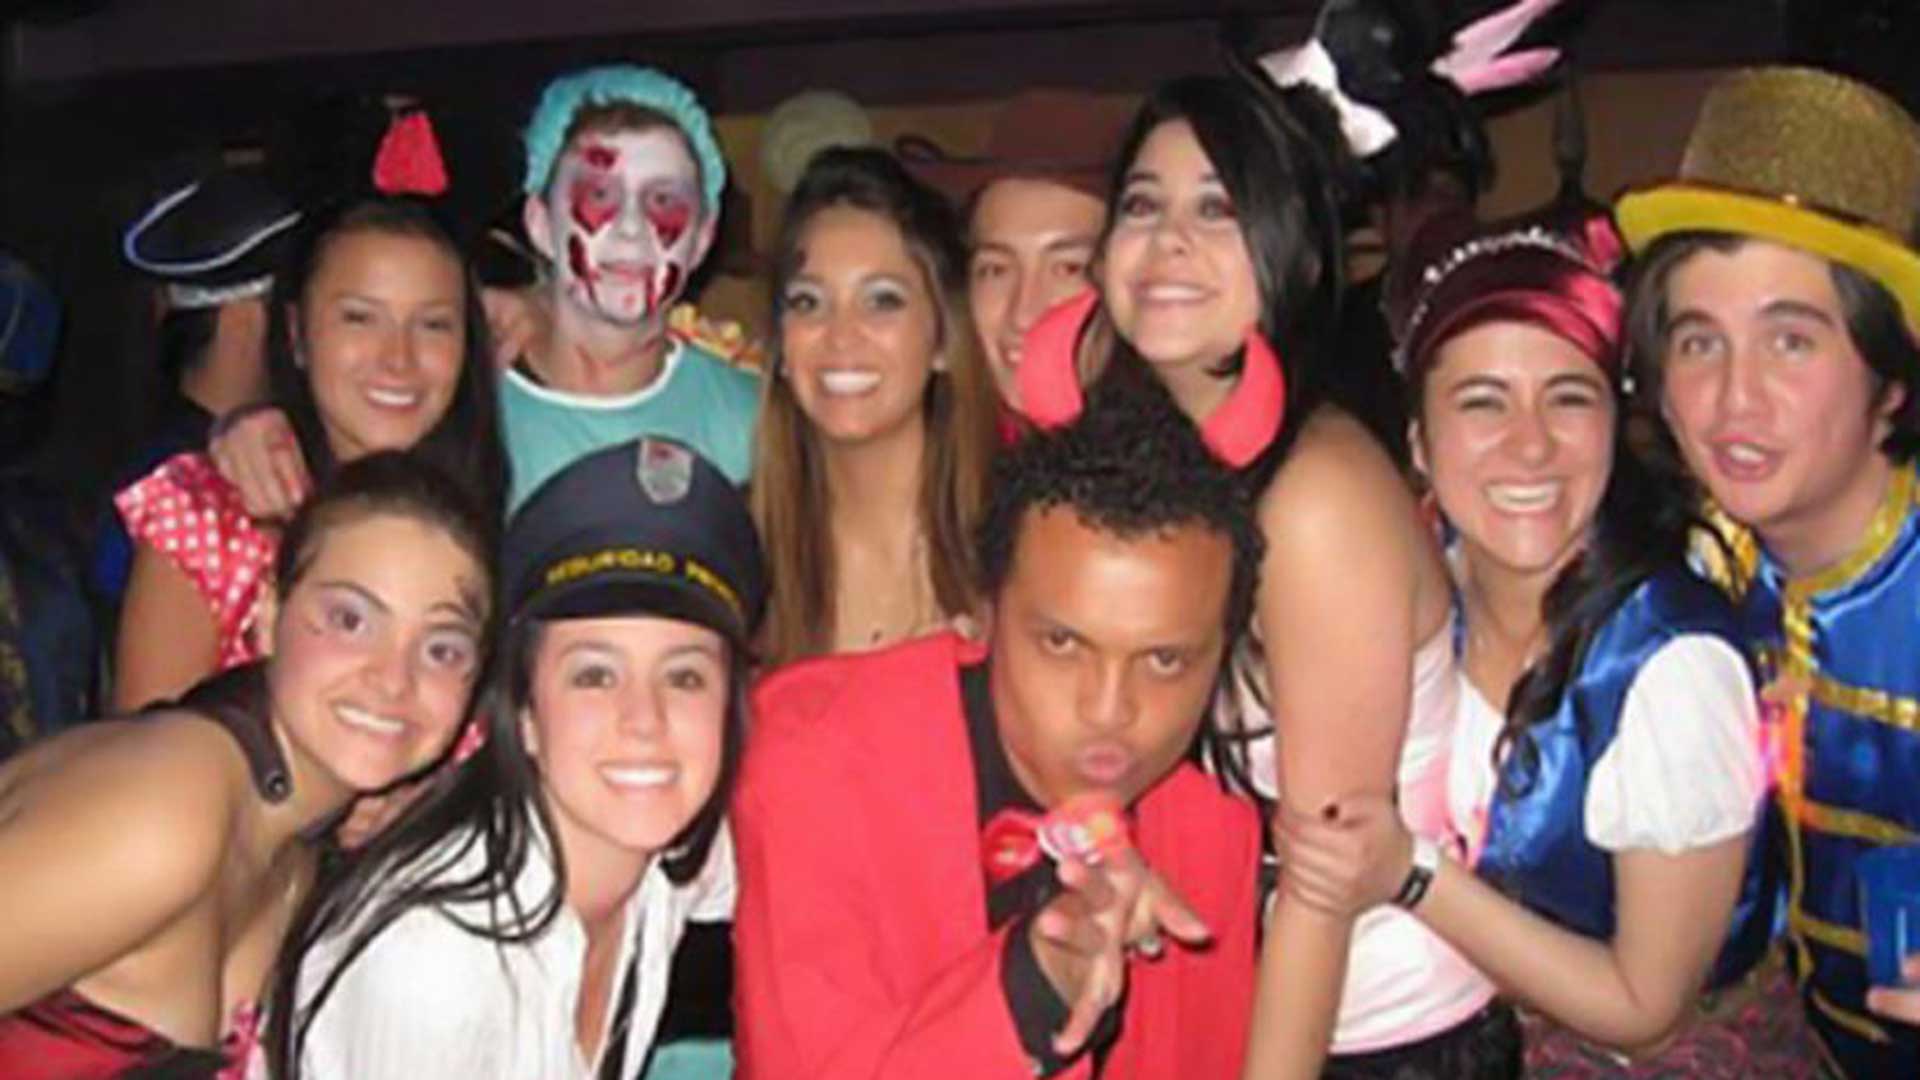 La noche de la muerte de Luis Andrés Colmenares departía en una fiesta de Halloween con un grupo de compañeros de universidad.